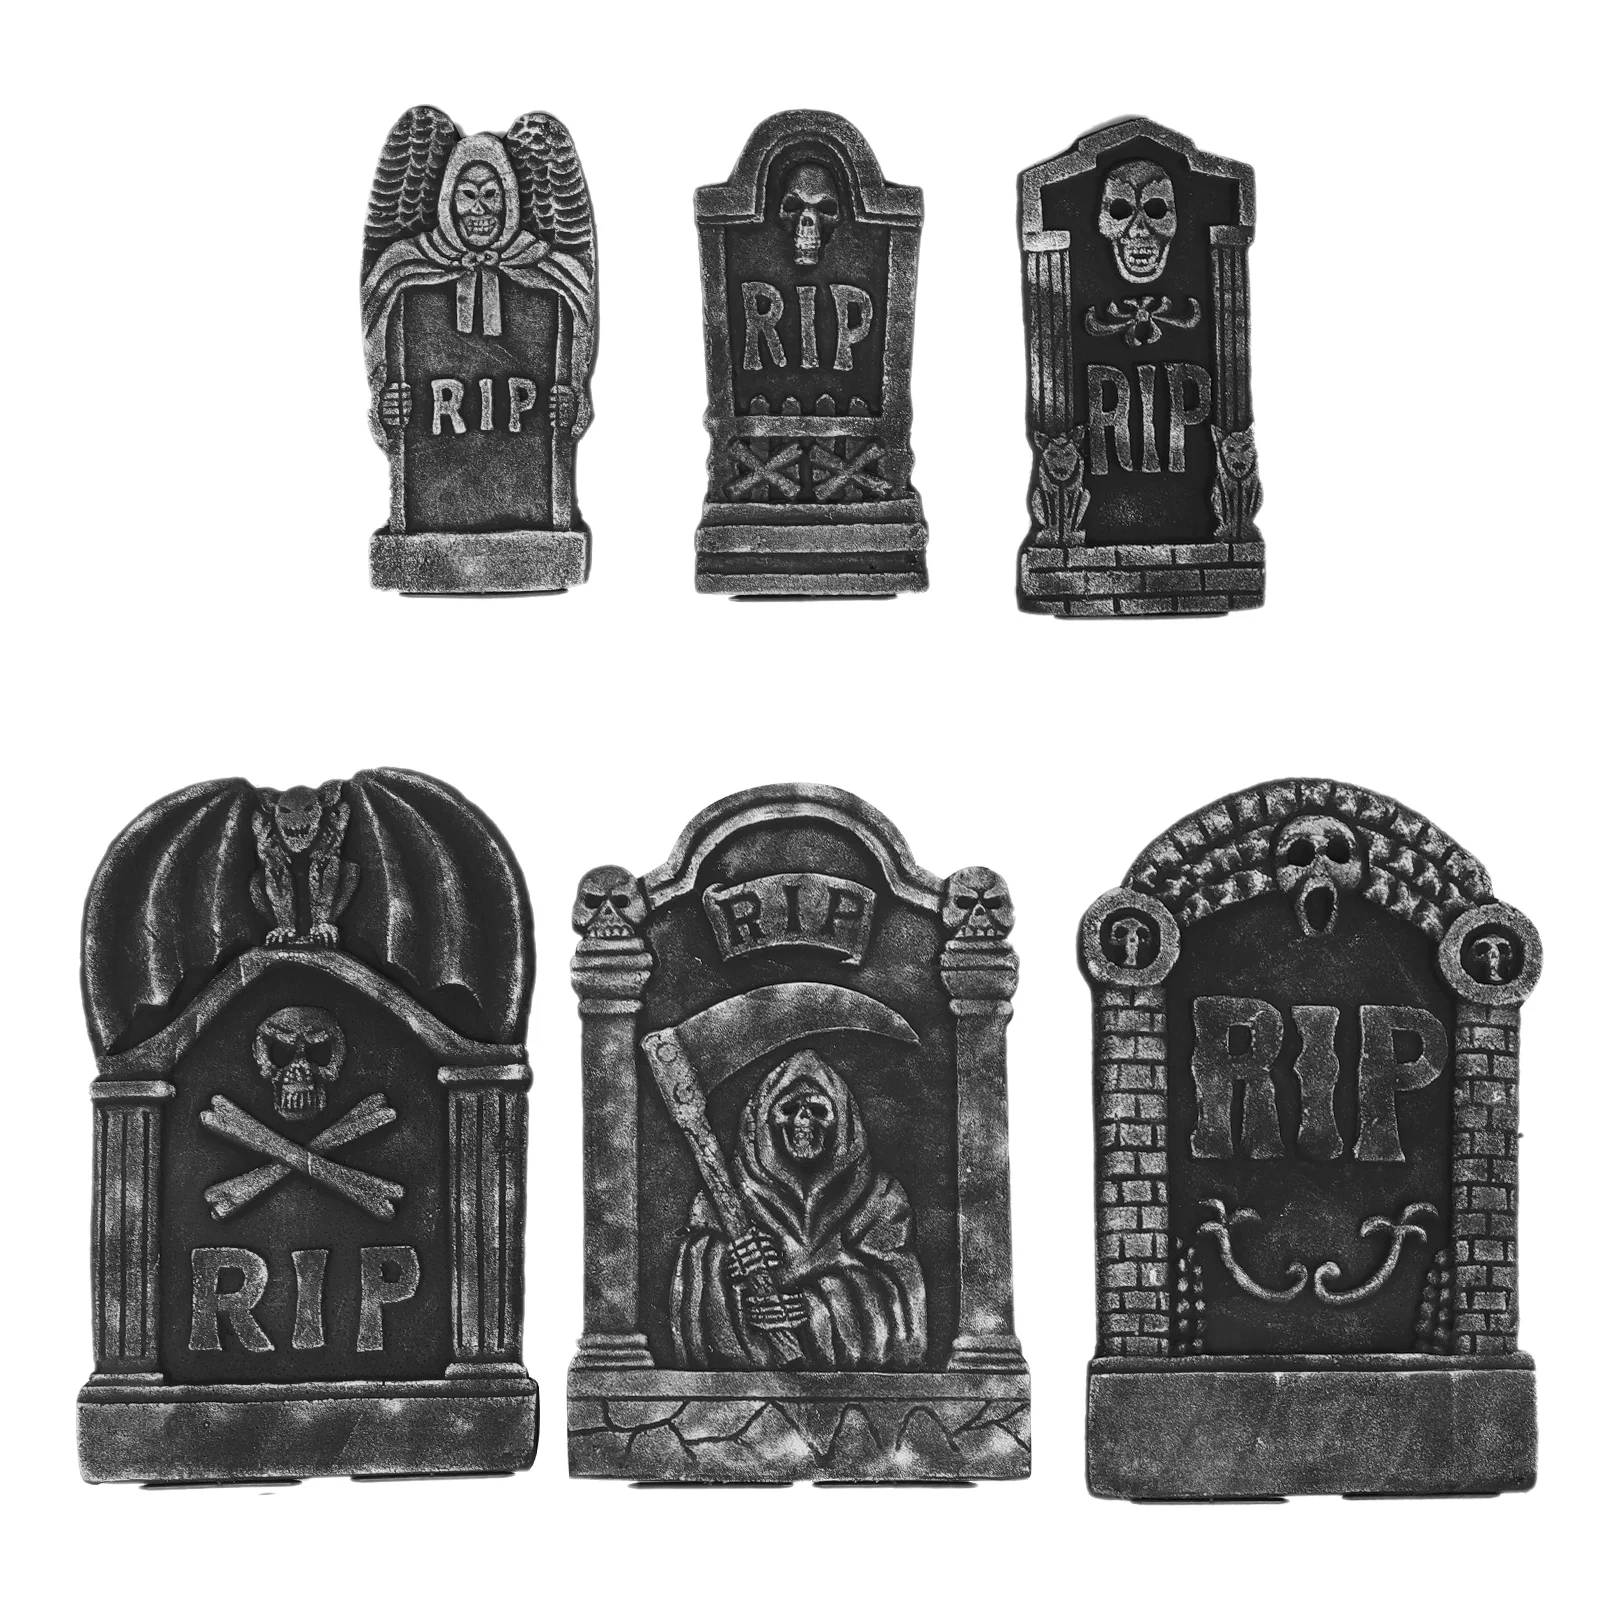 

6 Pcs Halloween Tombstone Decorations Gravestone Ornaments Lawn Headstone Foam Spooky Scene Layout Props